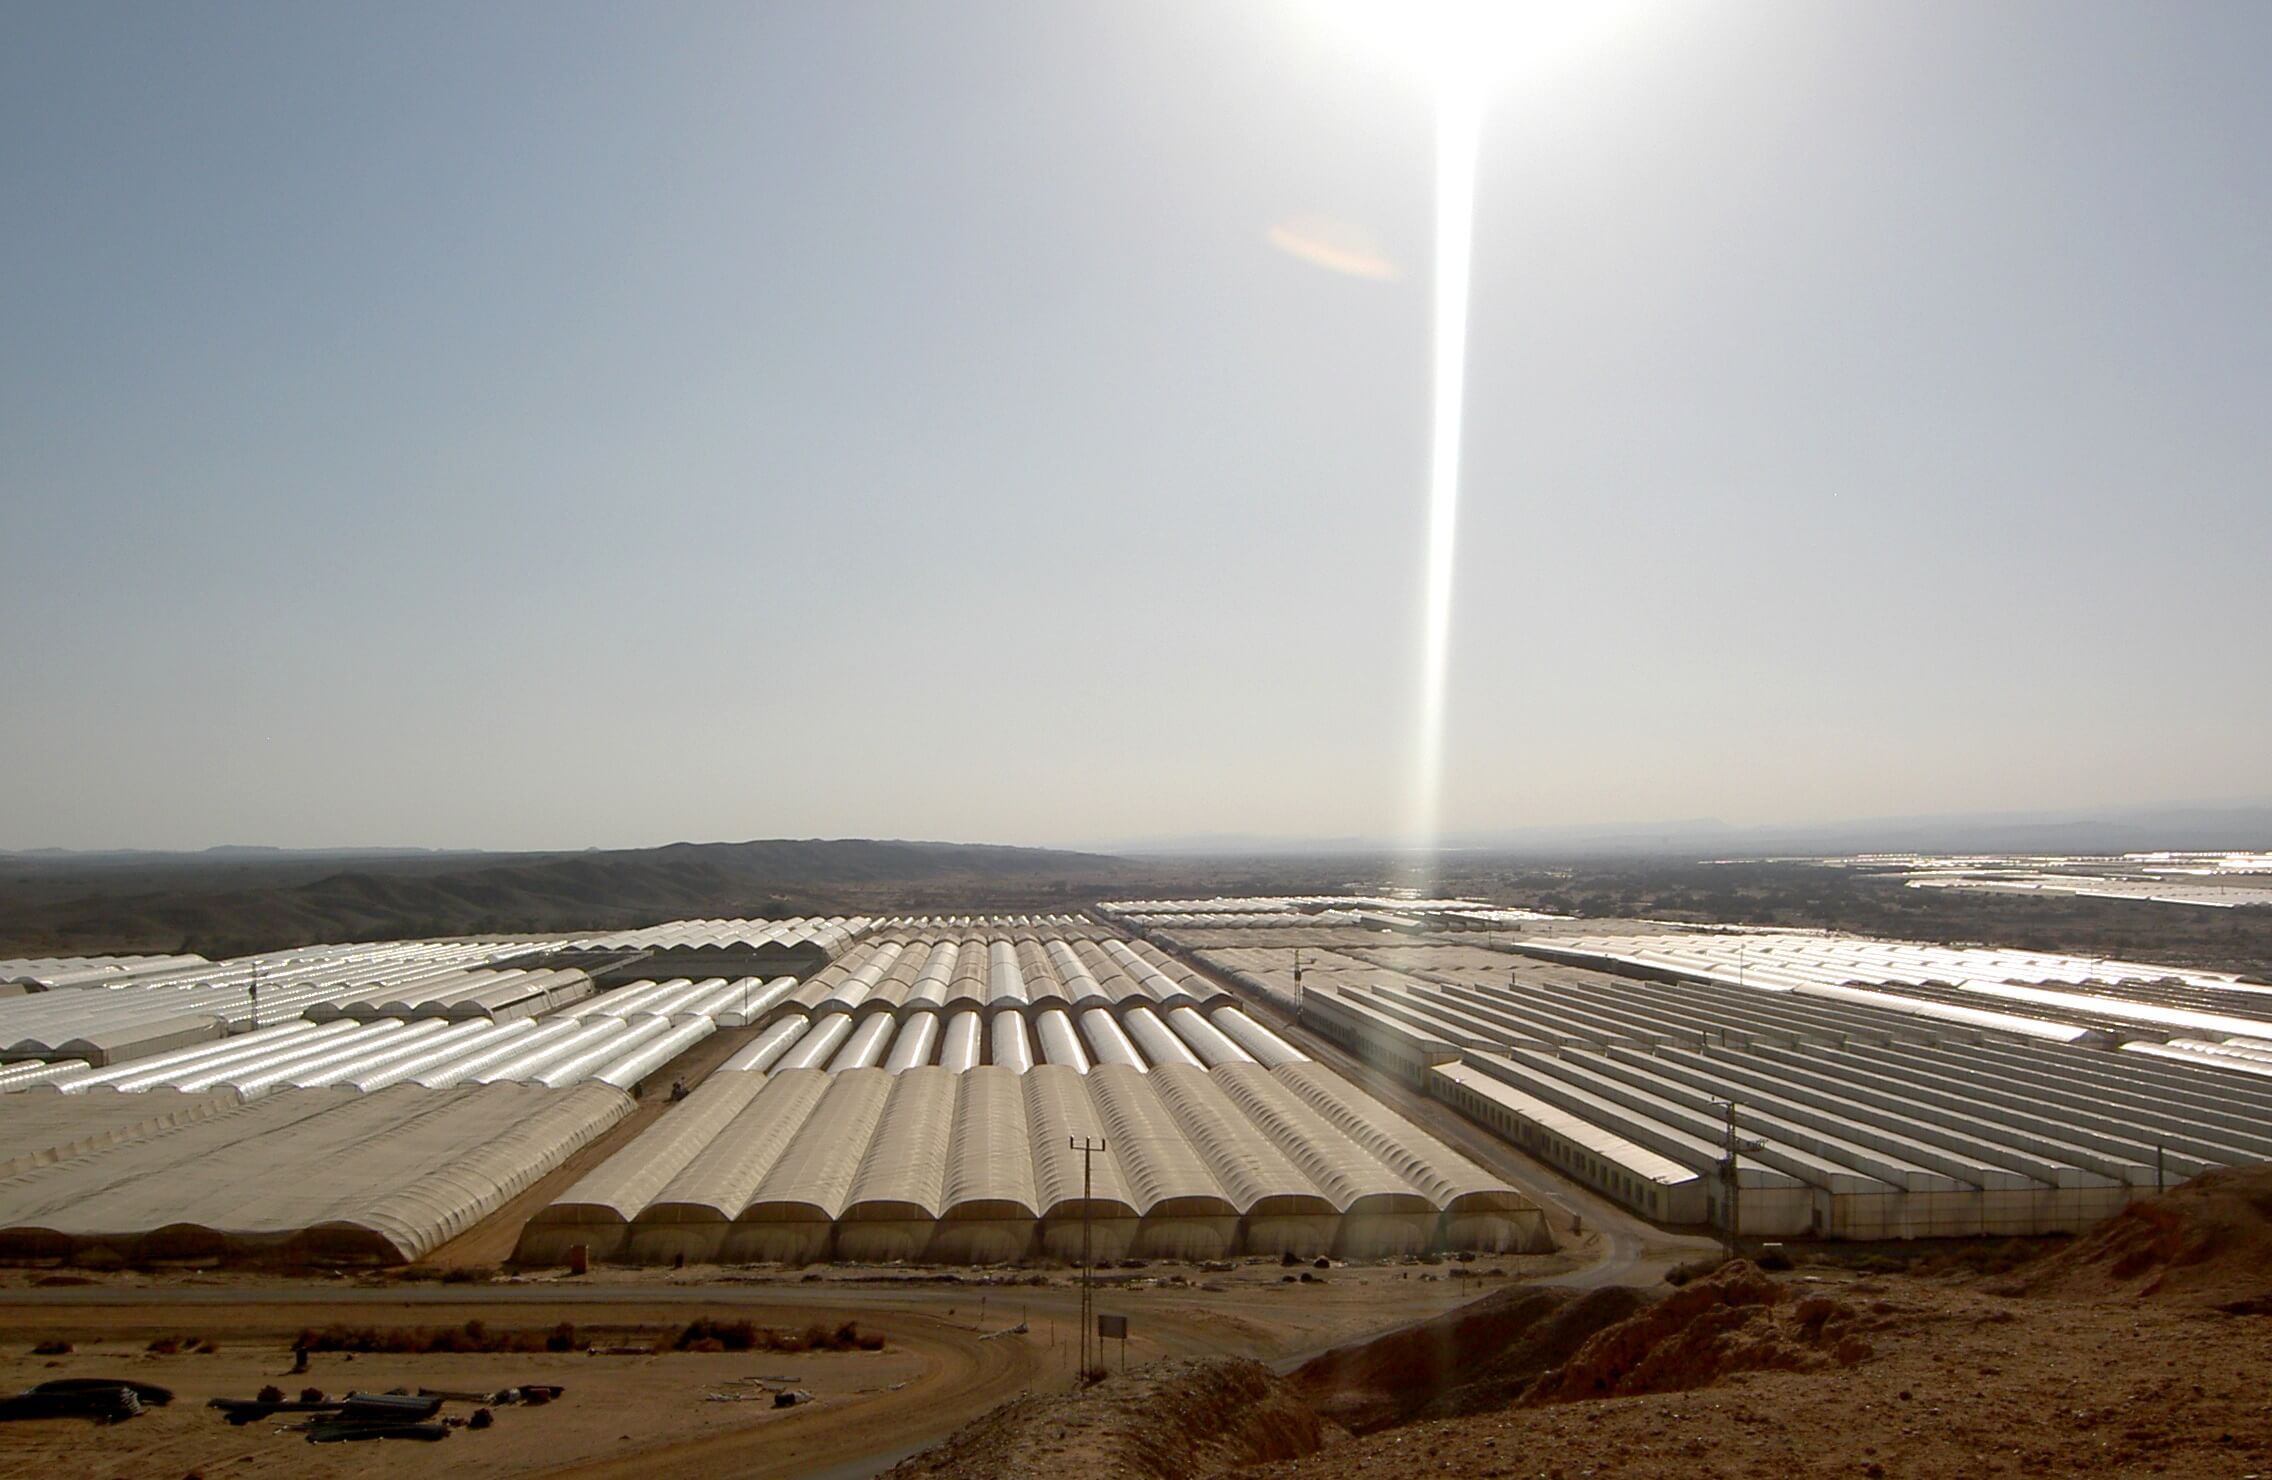 חקלאי הערבה התיכונה: הפסדי עתק עקב ביטול ללא התרעה, של חברת החשמל להקמת פרויקטים סולאריים במכרזים שהחברה עצמה פרסמה ועודדה השקעה